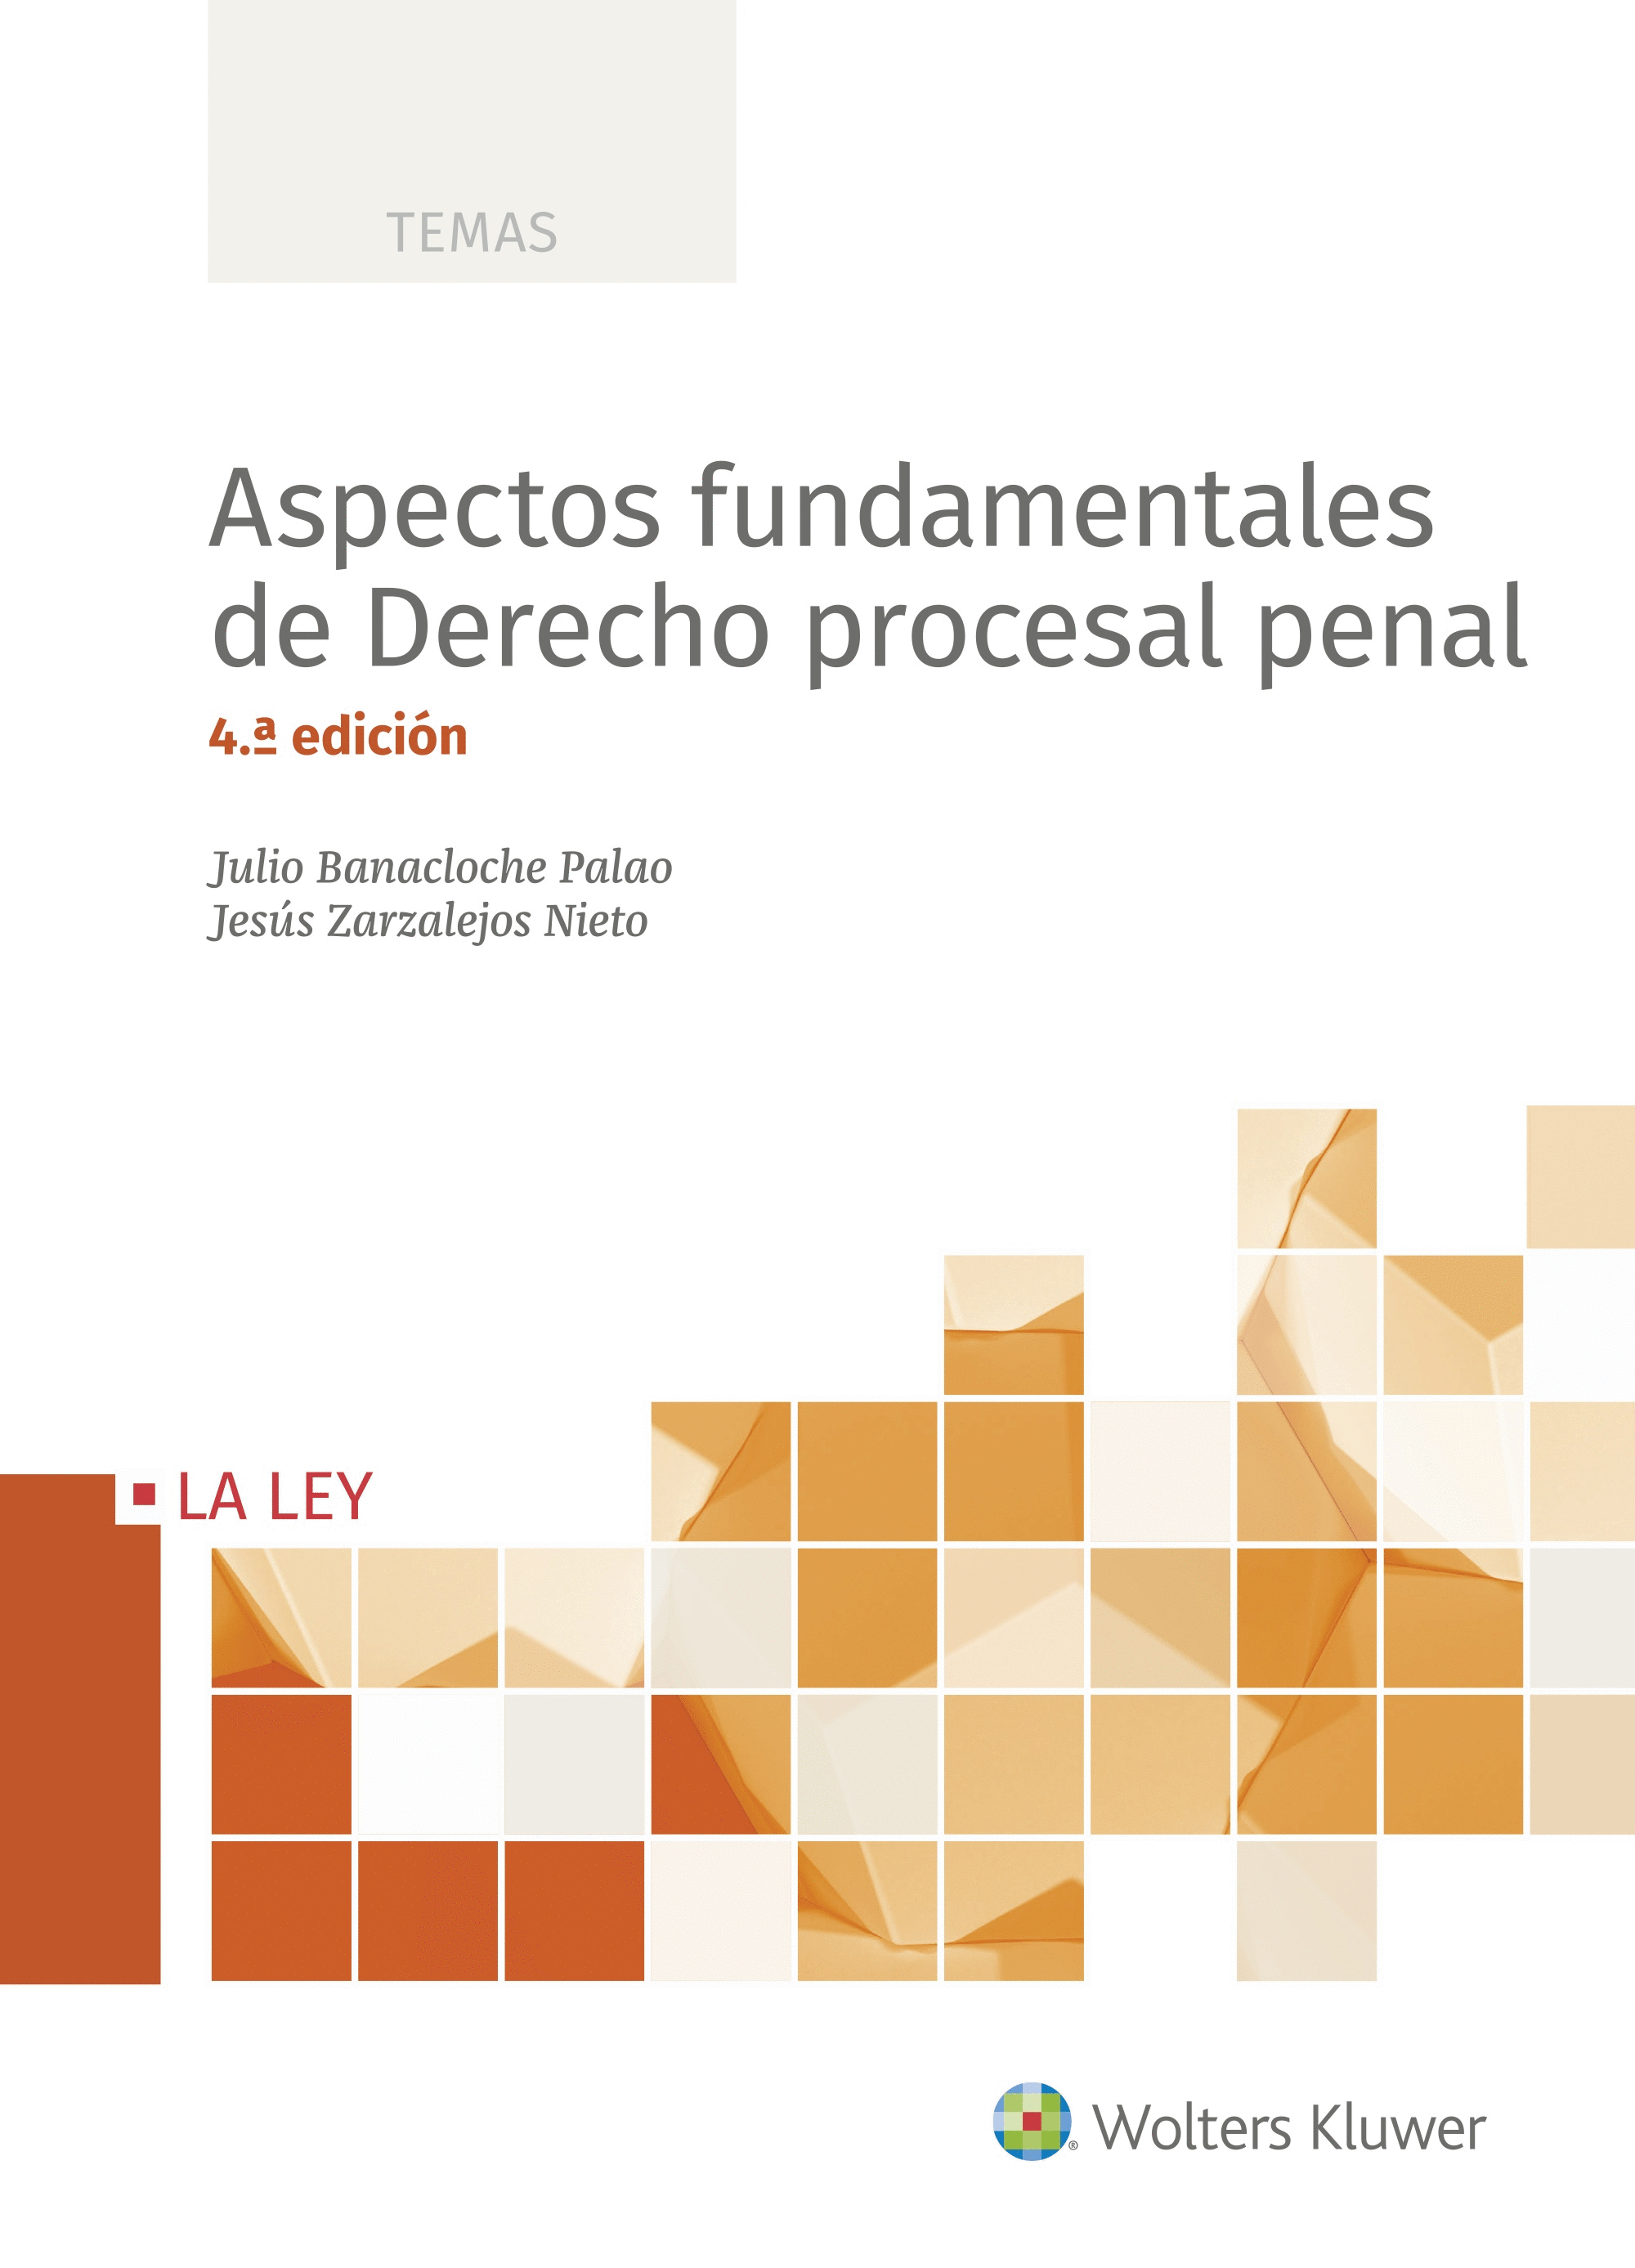 ASPECTOS FUNDAMENTALES DE DERECHO PROCESAL PENAL,